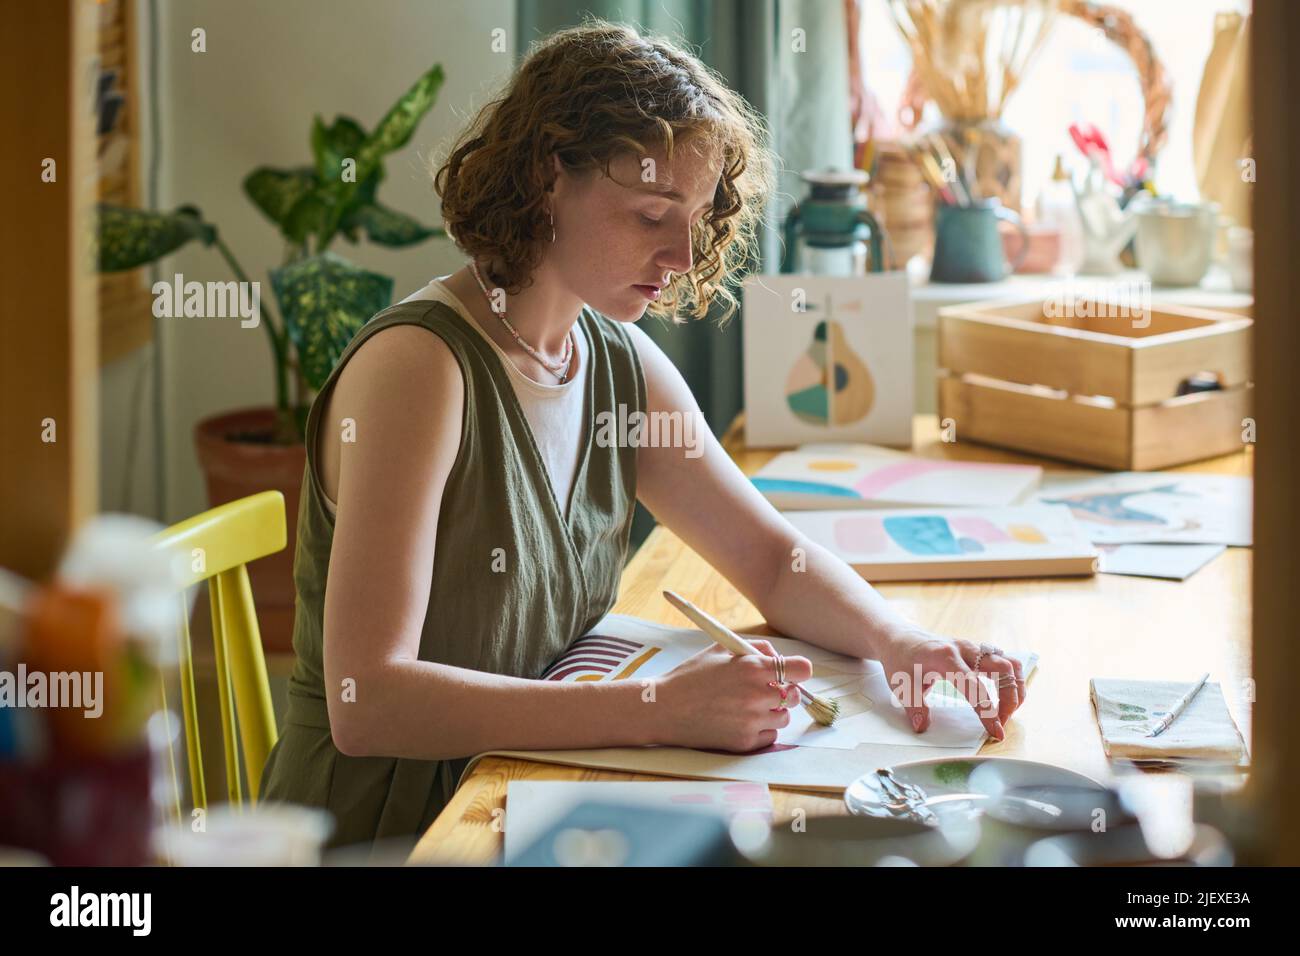 Jeune femme sérieuse avec pinceau assis au travail en studio et peindre des choses abstraites avec des aquarelles ou gouache sur papier Banque D'Images